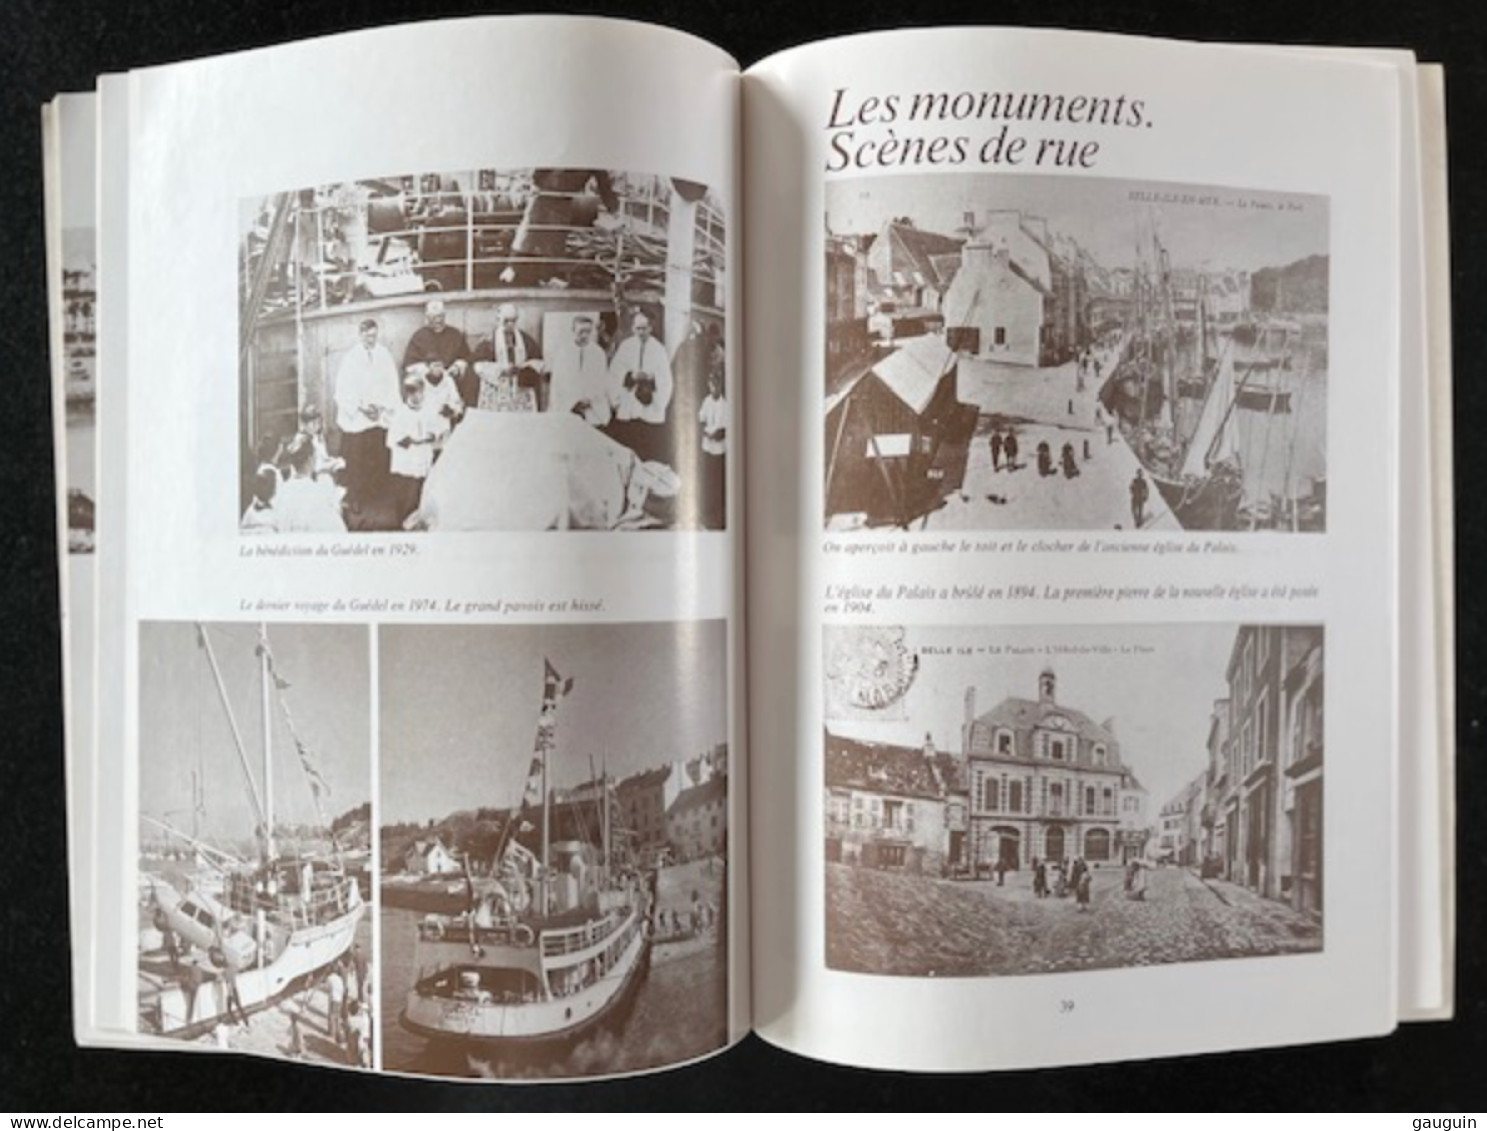 BELLE-ISLE-en-MER - "Images Du Passé" Repro. Cartes Postales Anciennes - Editions Lestrac - 78 Pages / 1977 §TOP RARE§ - Libros & Catálogos